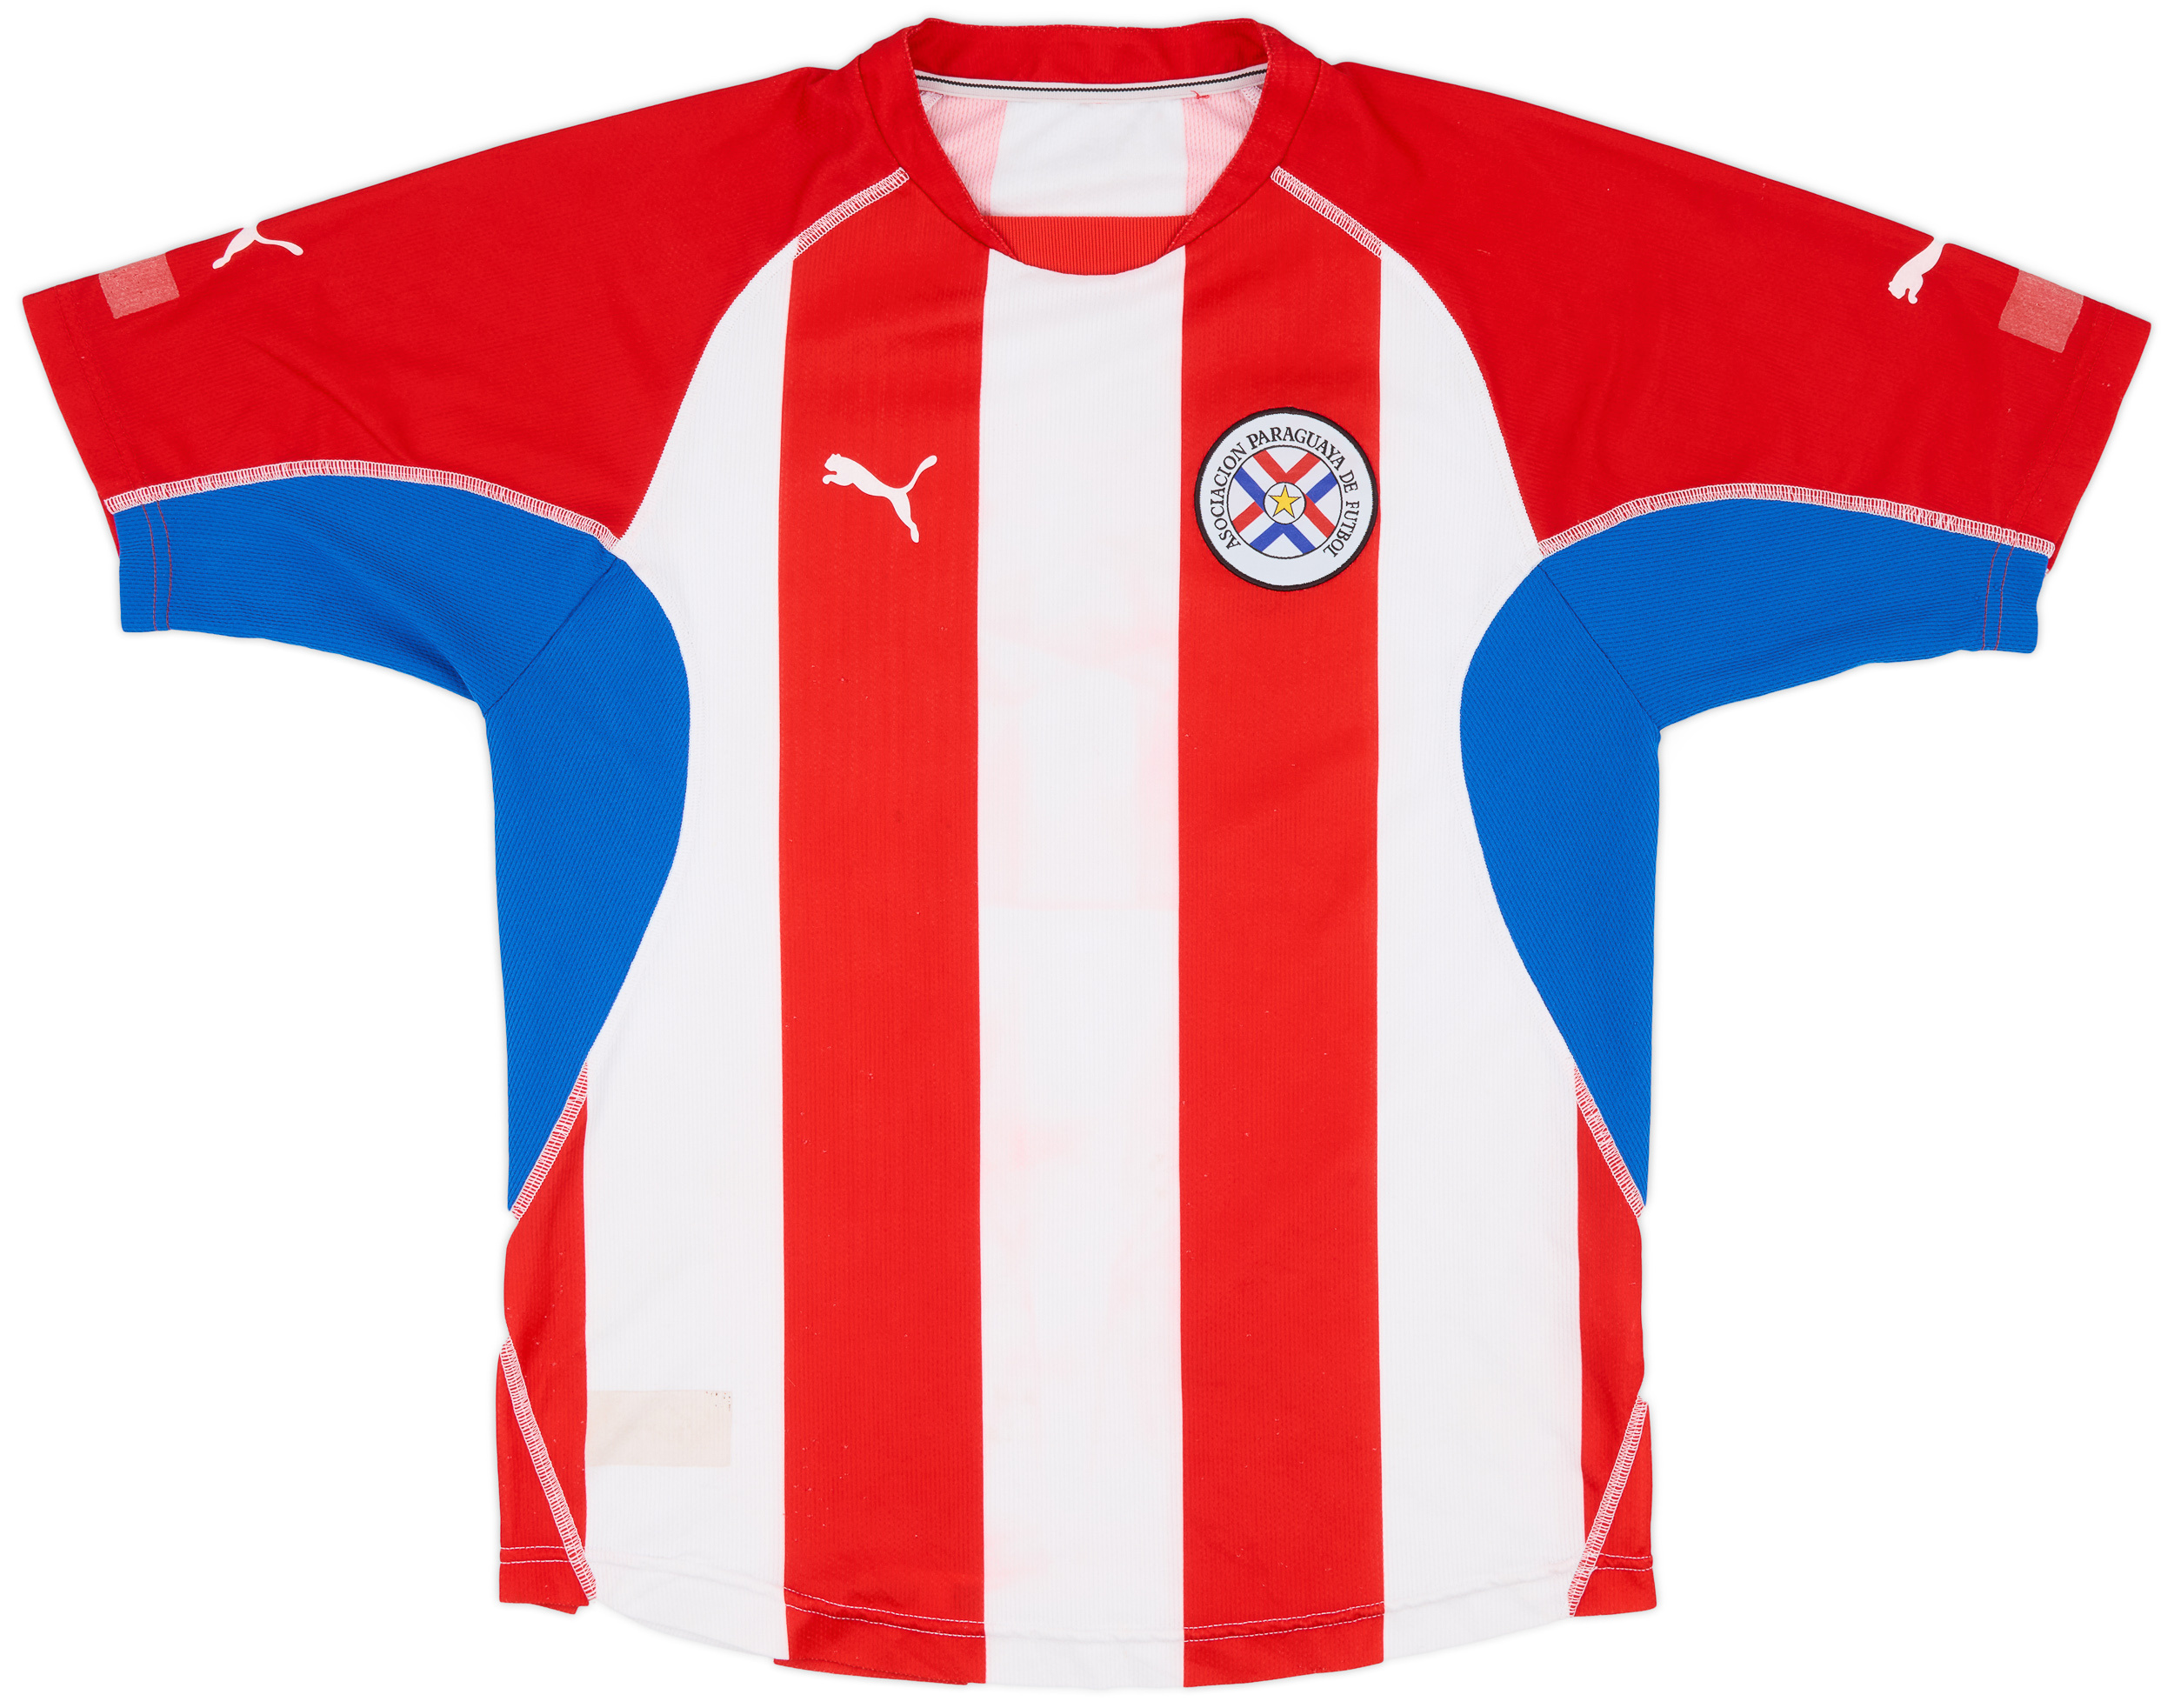 Retro Paraguay Shirt